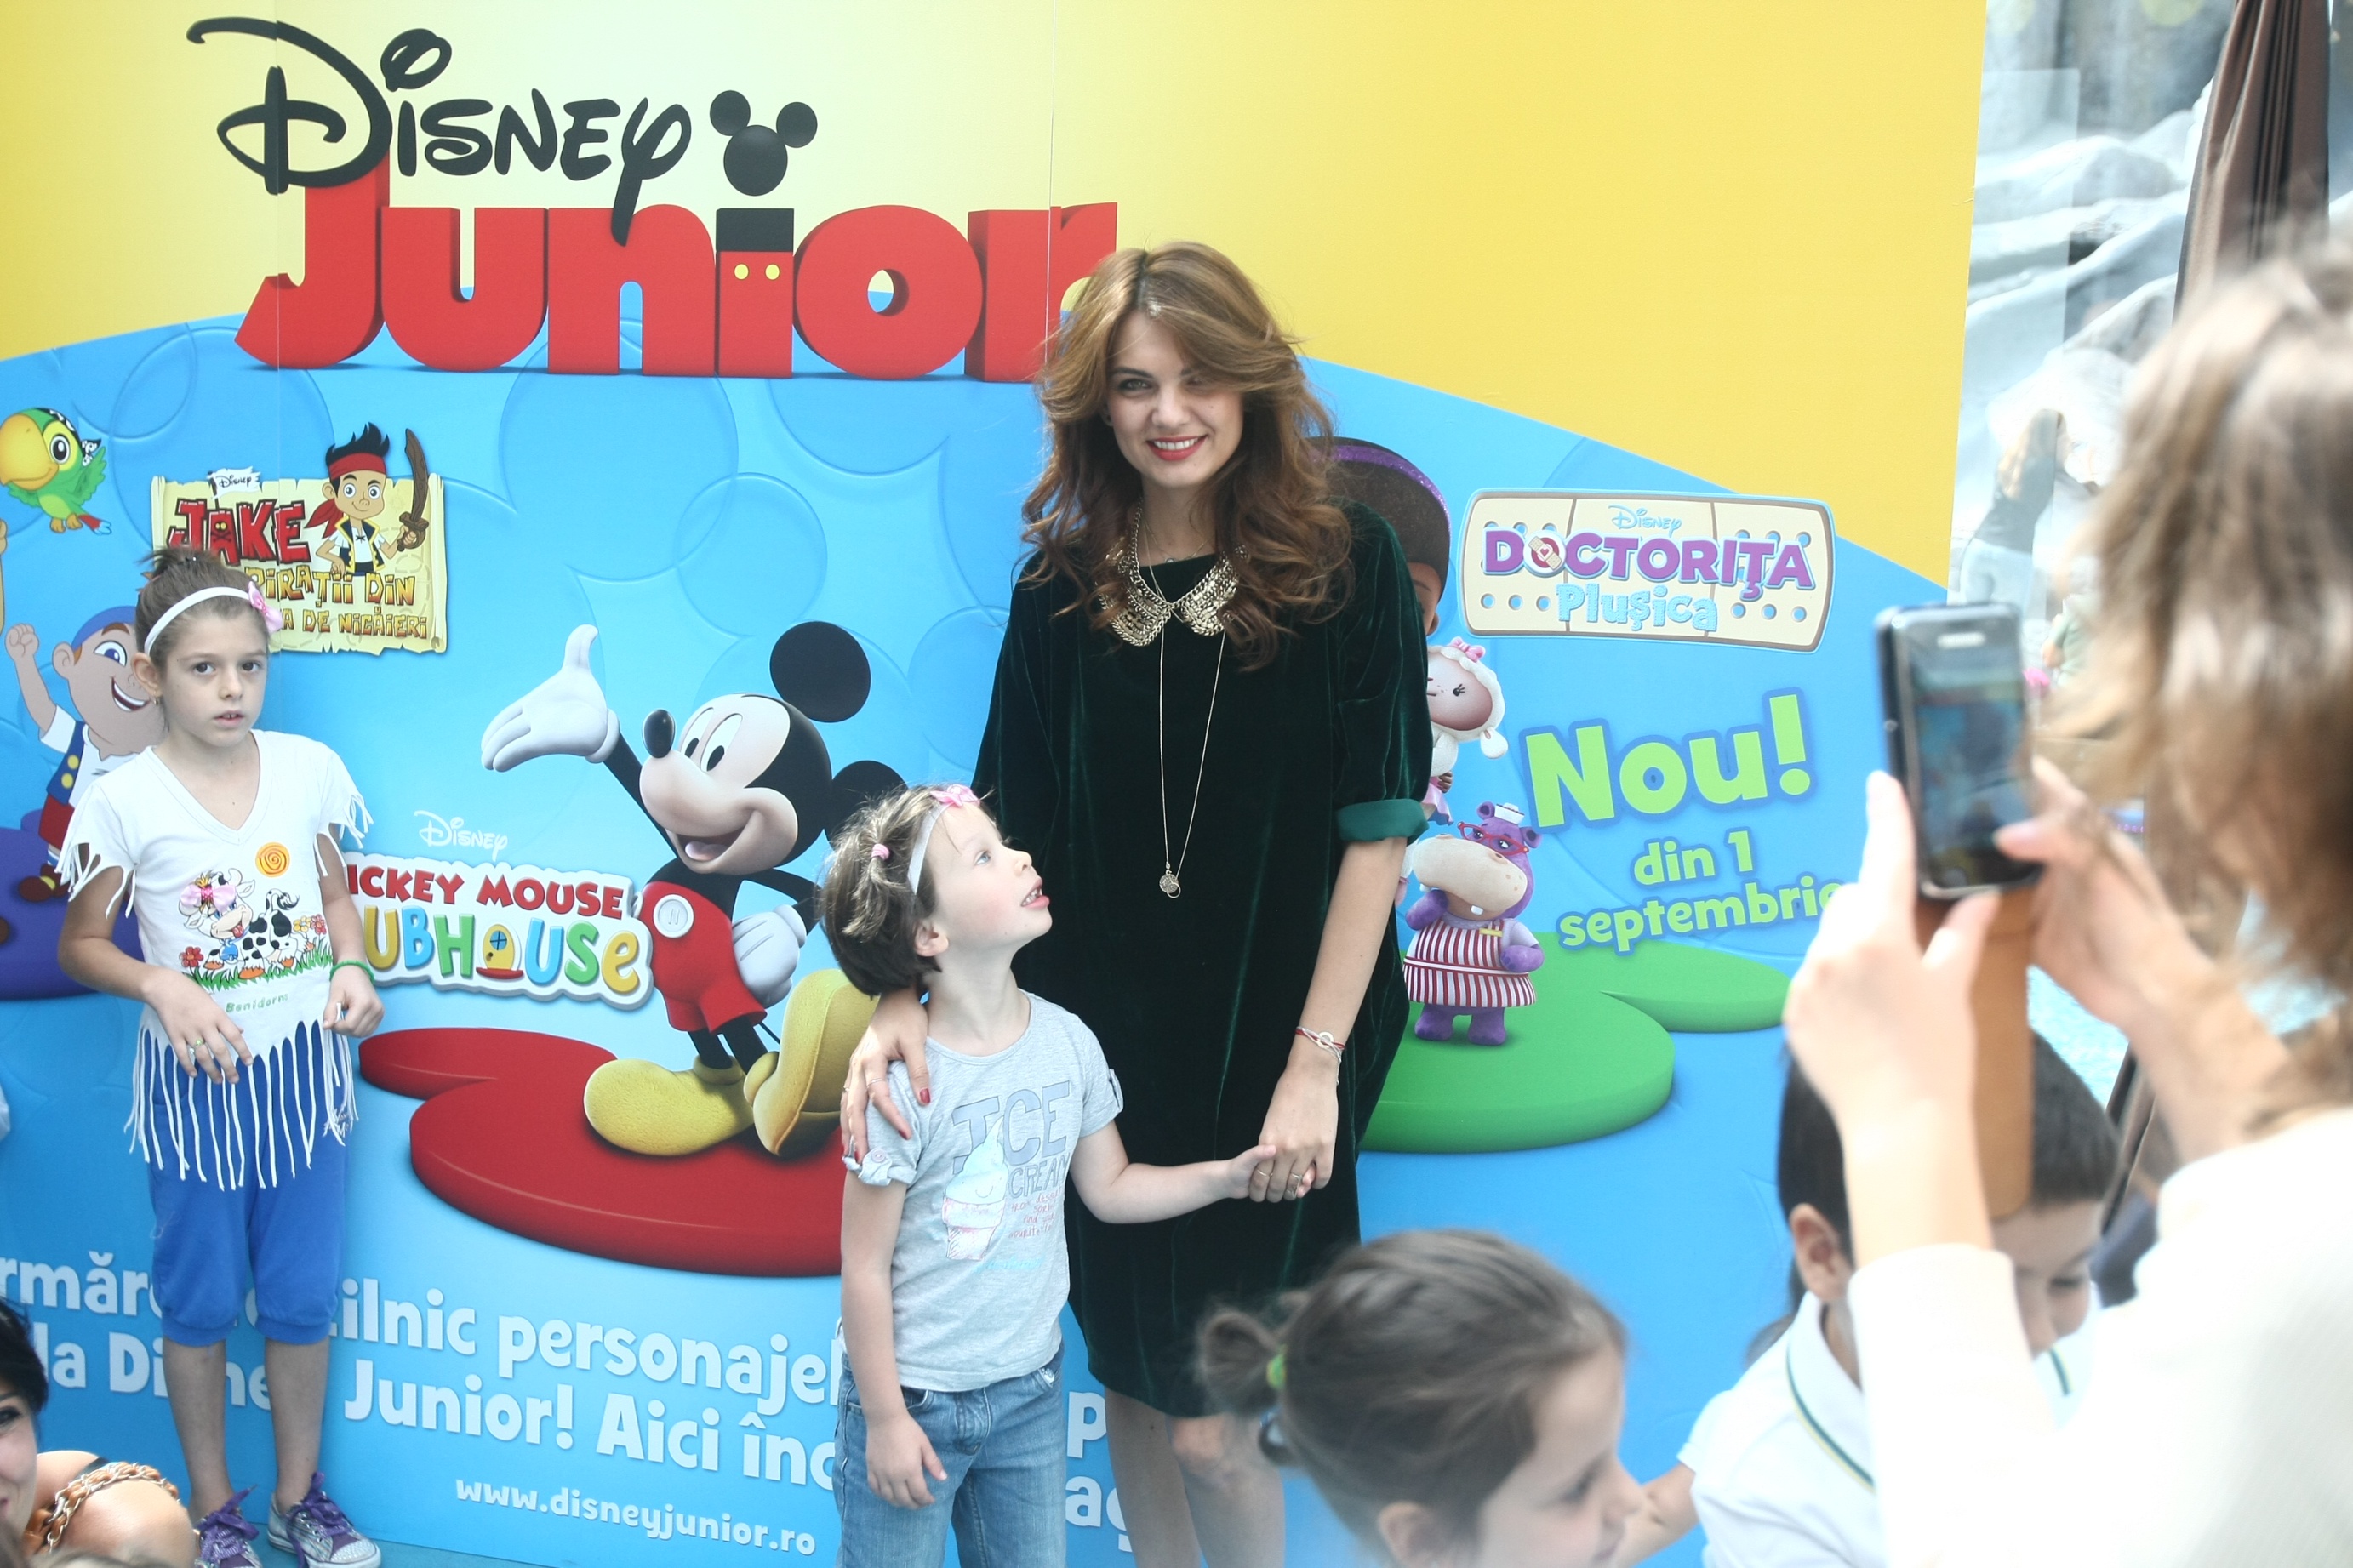 Disney Junior i-a provocat pe micuti la o demonstratie de talent in cadrul Atelierelor Creative organizate miercuri 12 septembrie in cadrul Afi Cotroceni Mall.